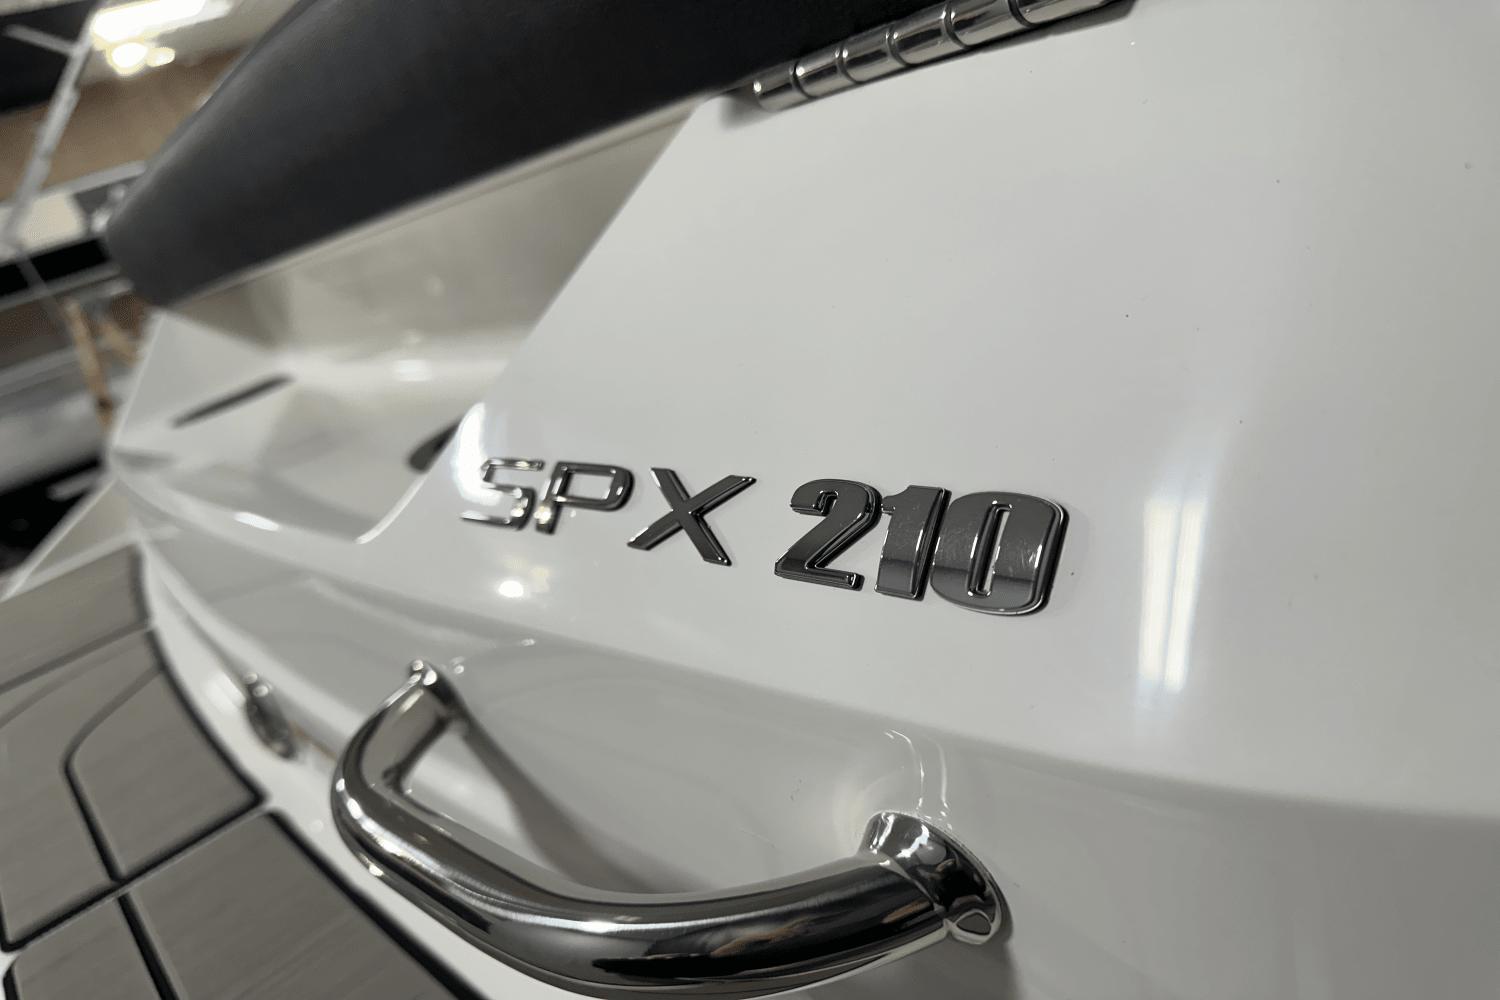 2024 Sea Ray SPX 210